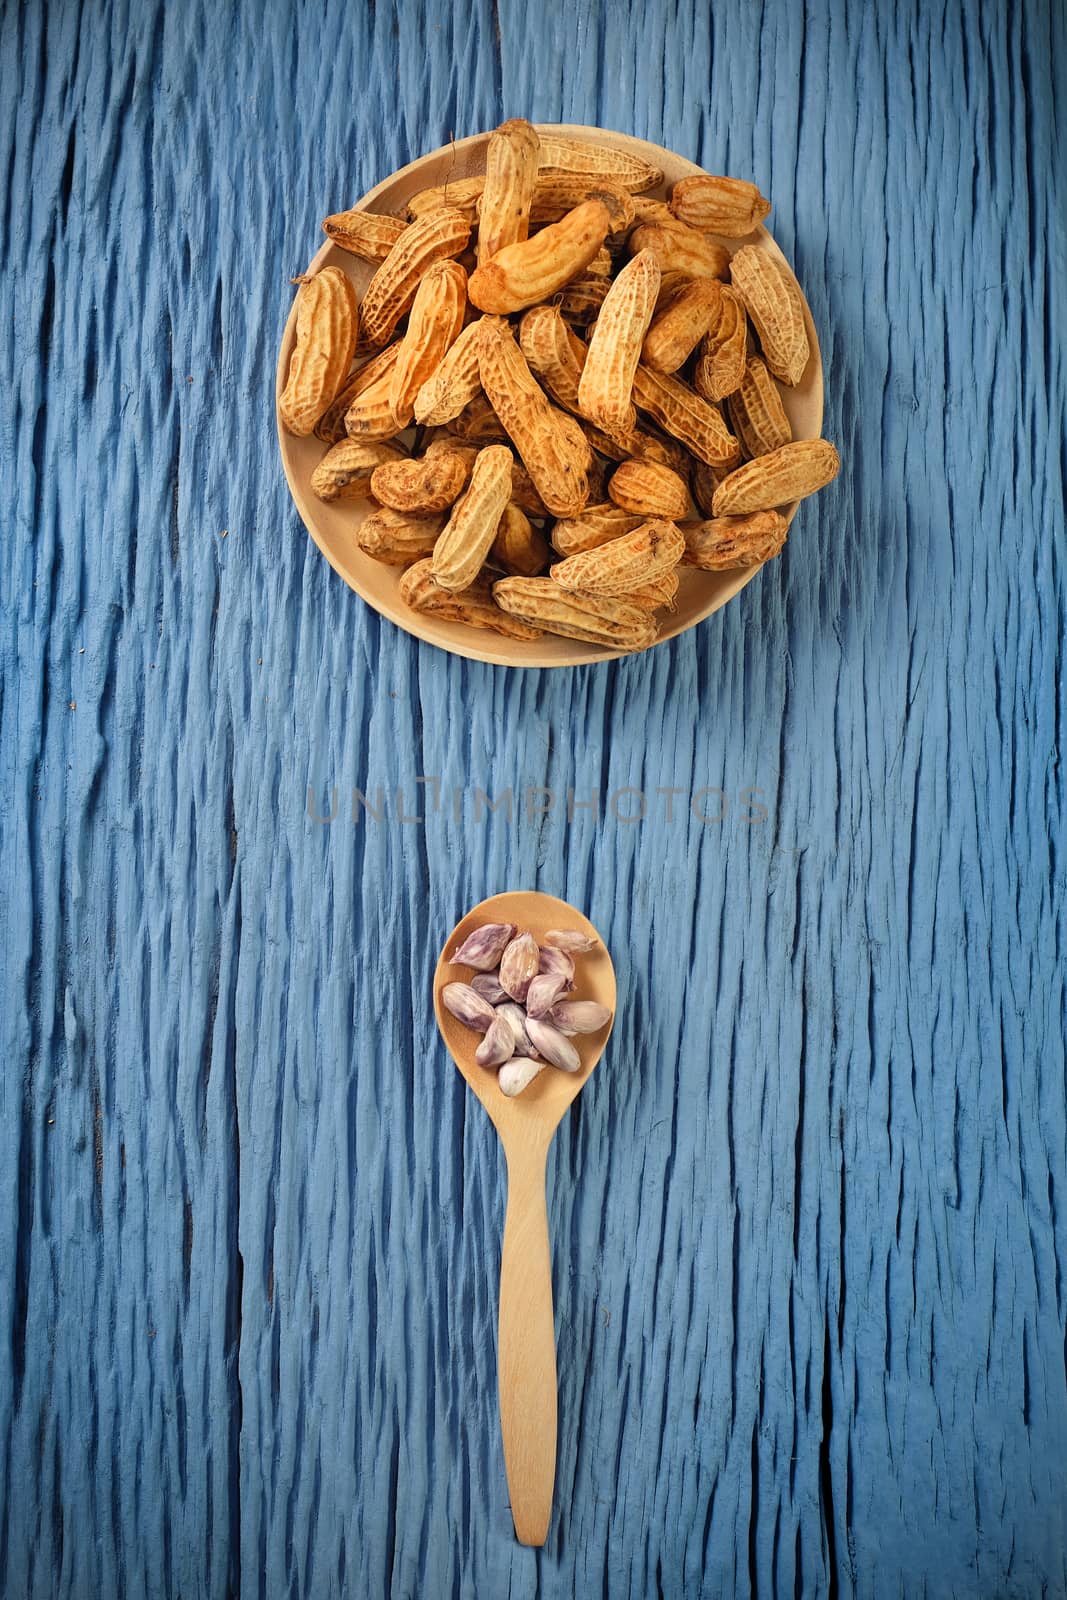 Peanuts on blue wood background